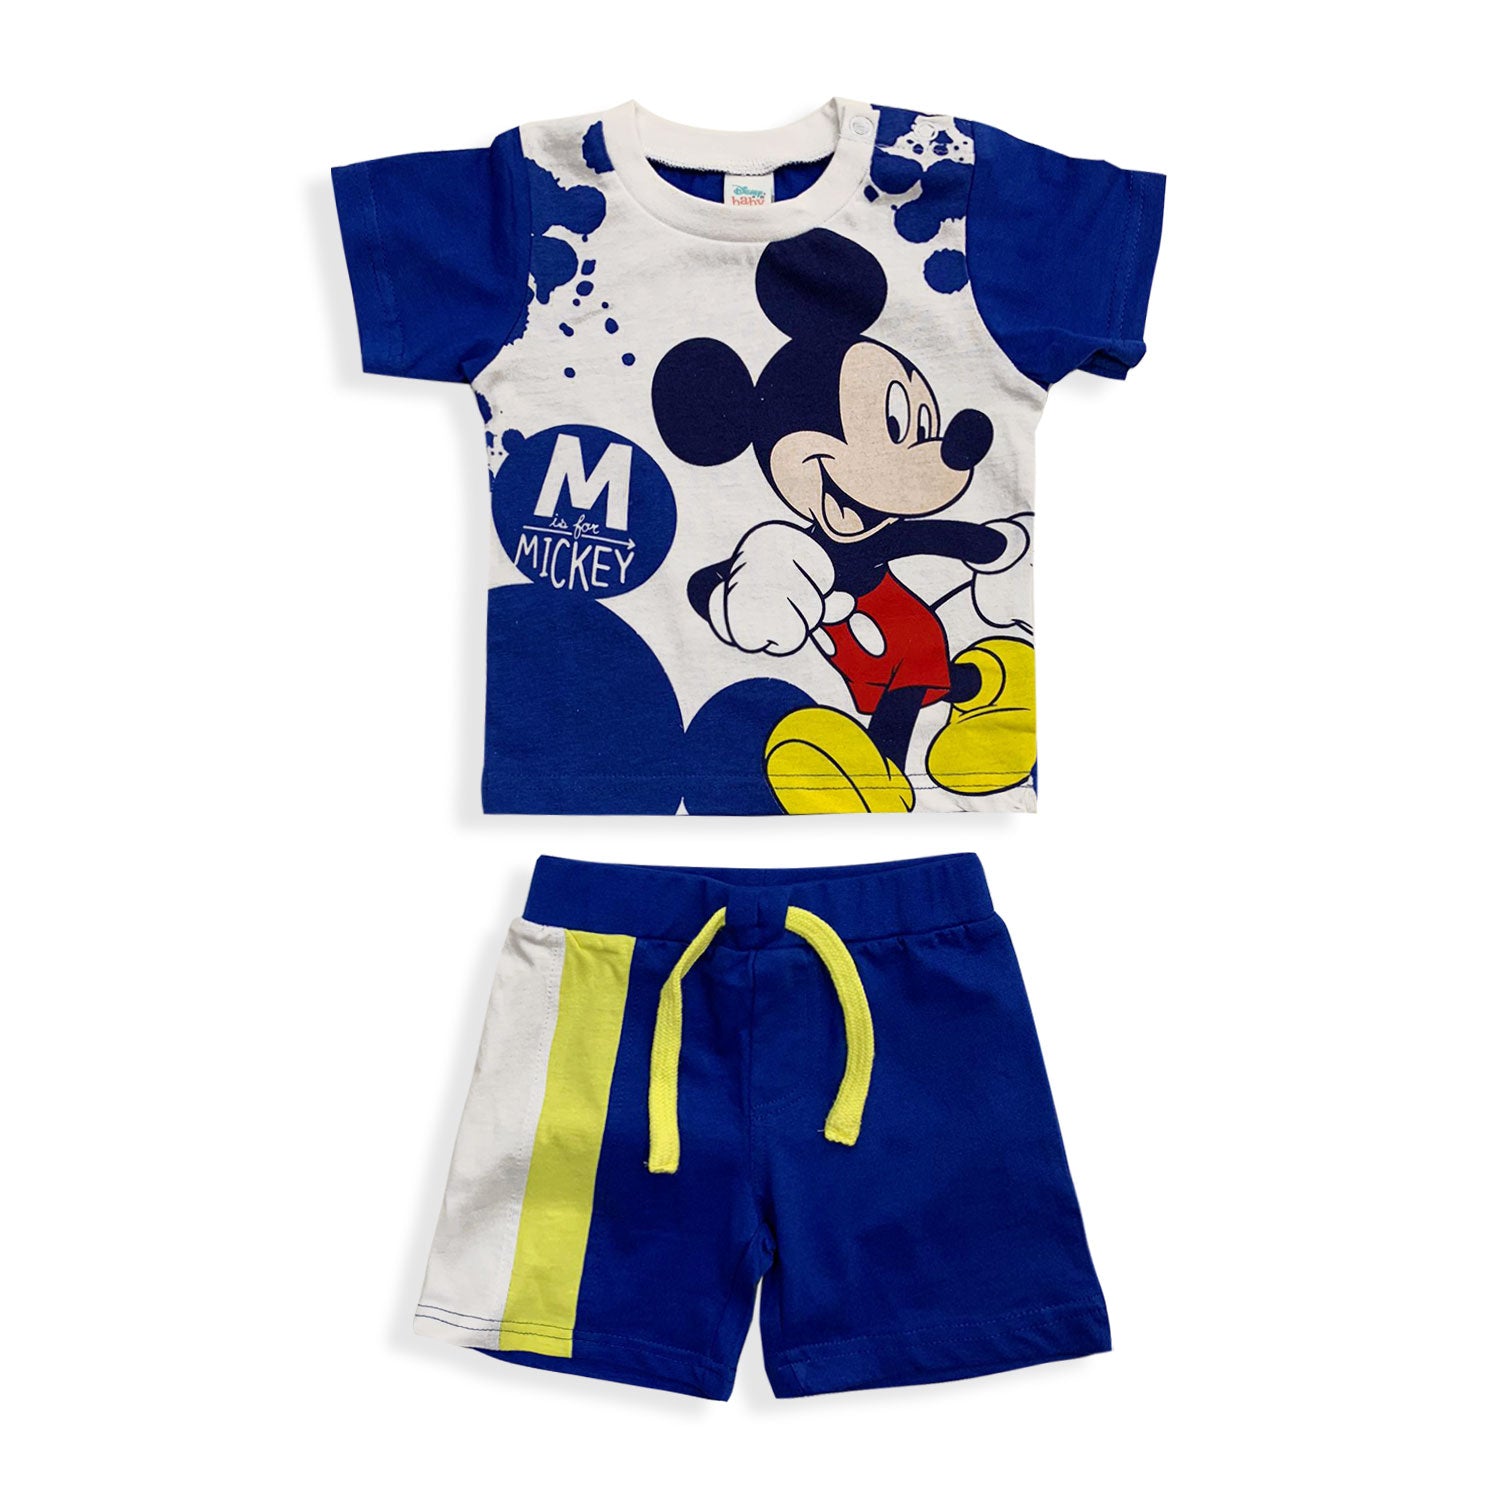 Pigiama Disney Mickey Mouse in cotone mezze maniche neonato bambino 5492